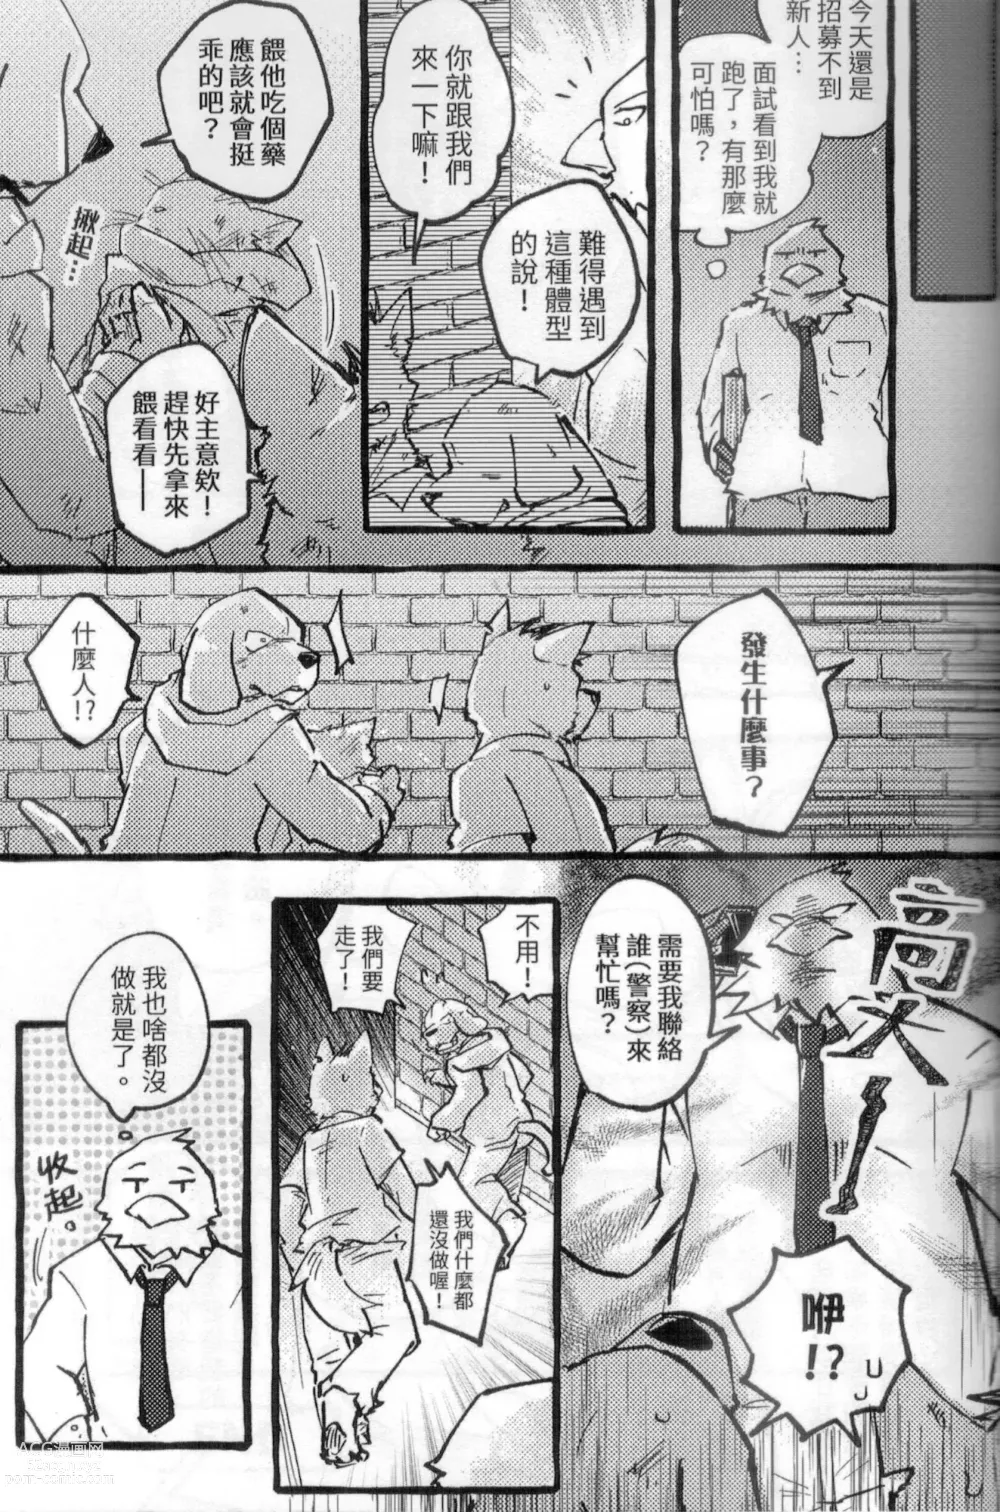 Page 12 of doujinshi 啊就脫掉吧